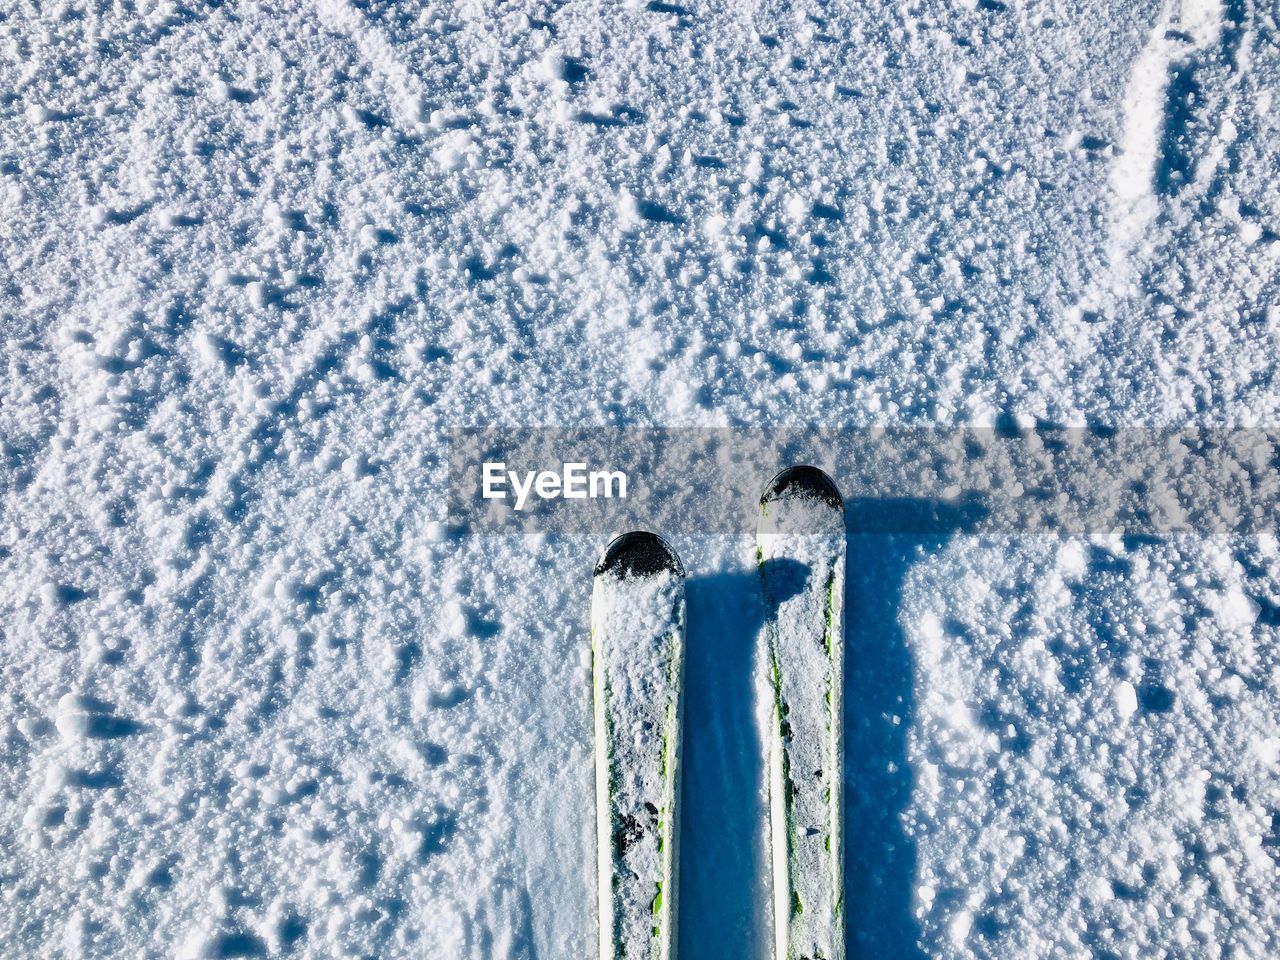 Skis on the snow - minimalism